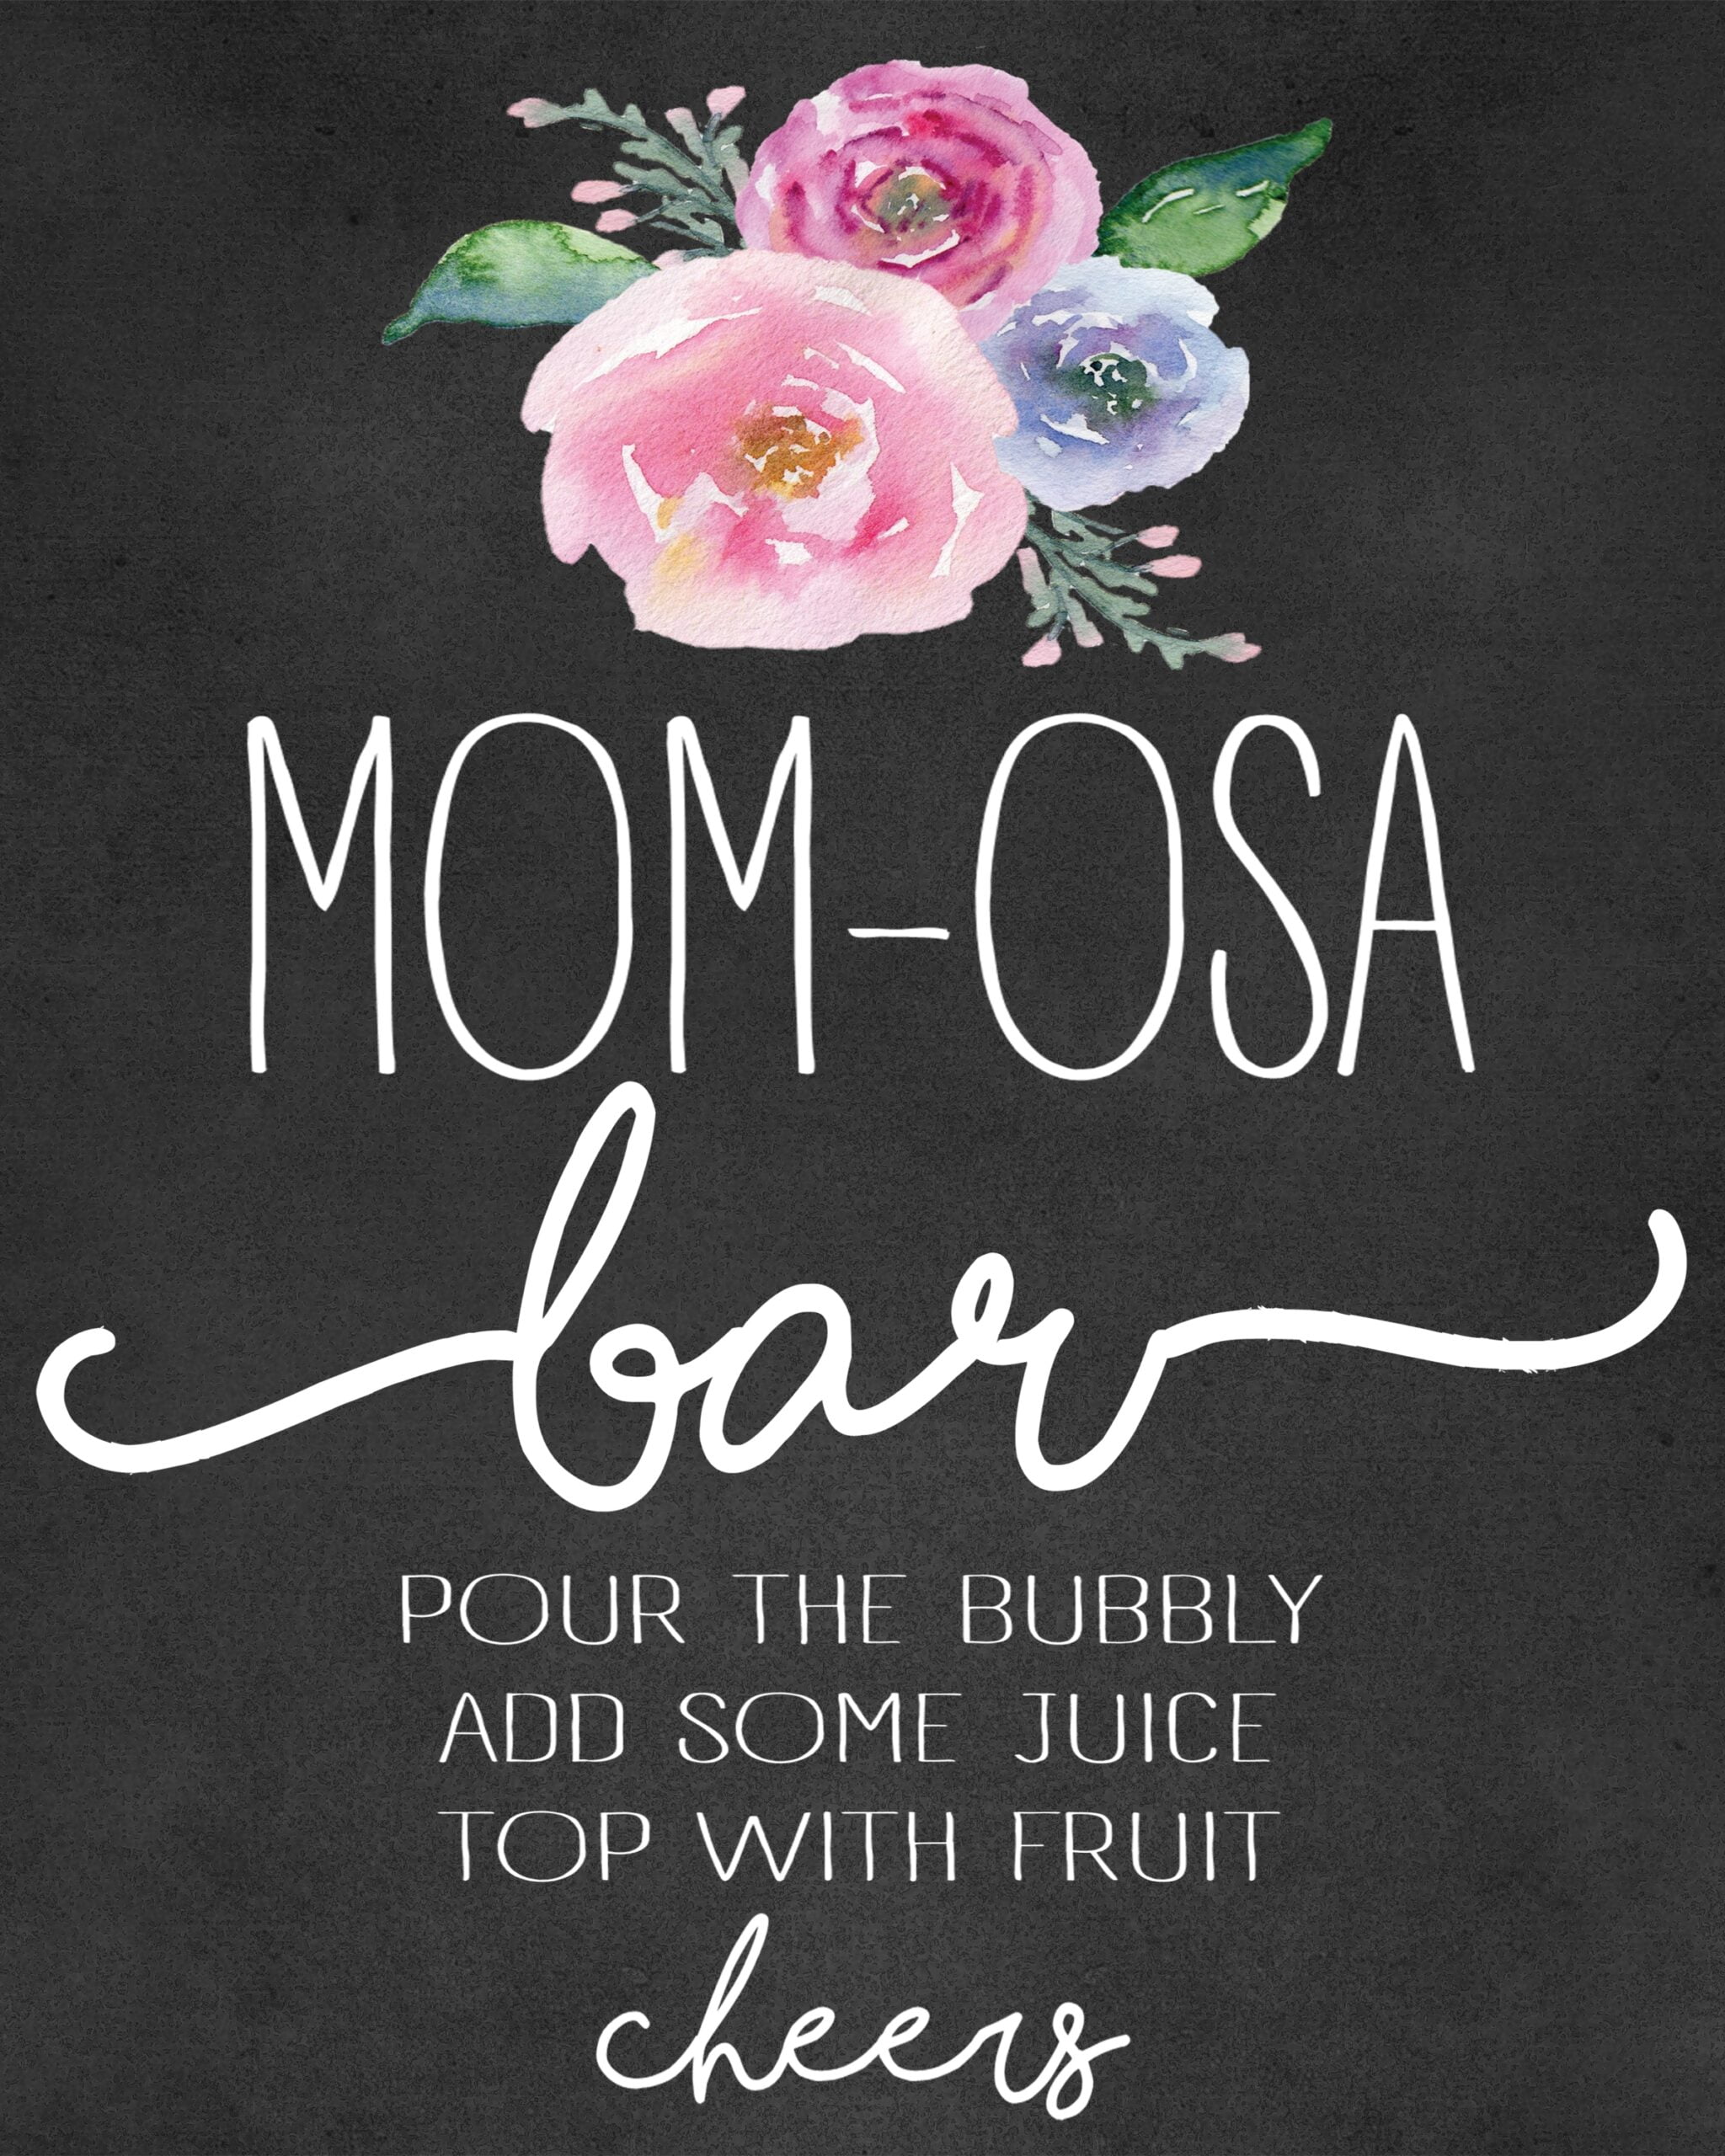 Mom Osa Bar Sign Printable Free